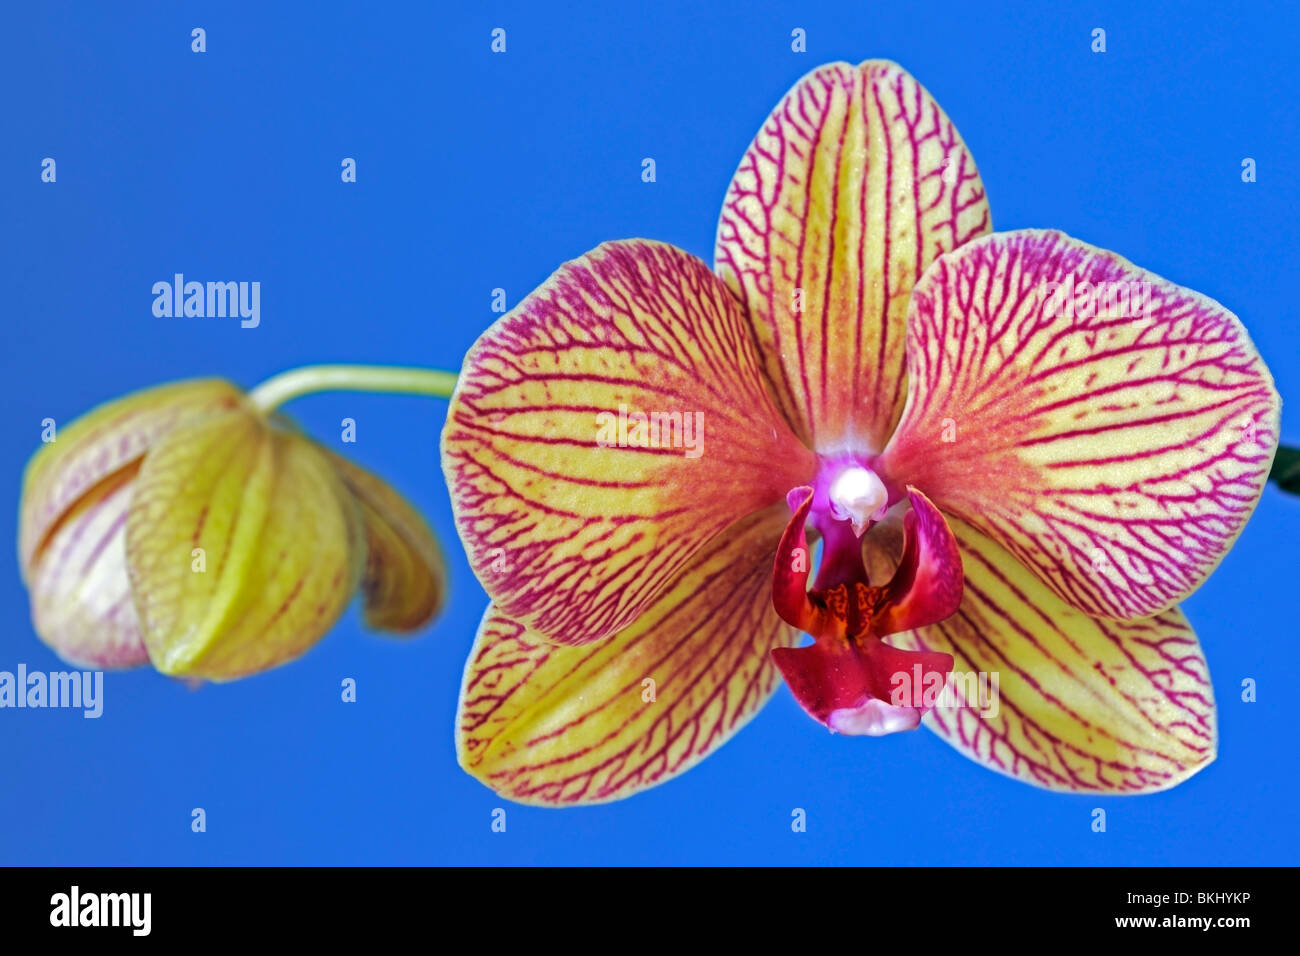 Attraente simmetria bilaterale in una falena orchid Foto Stock